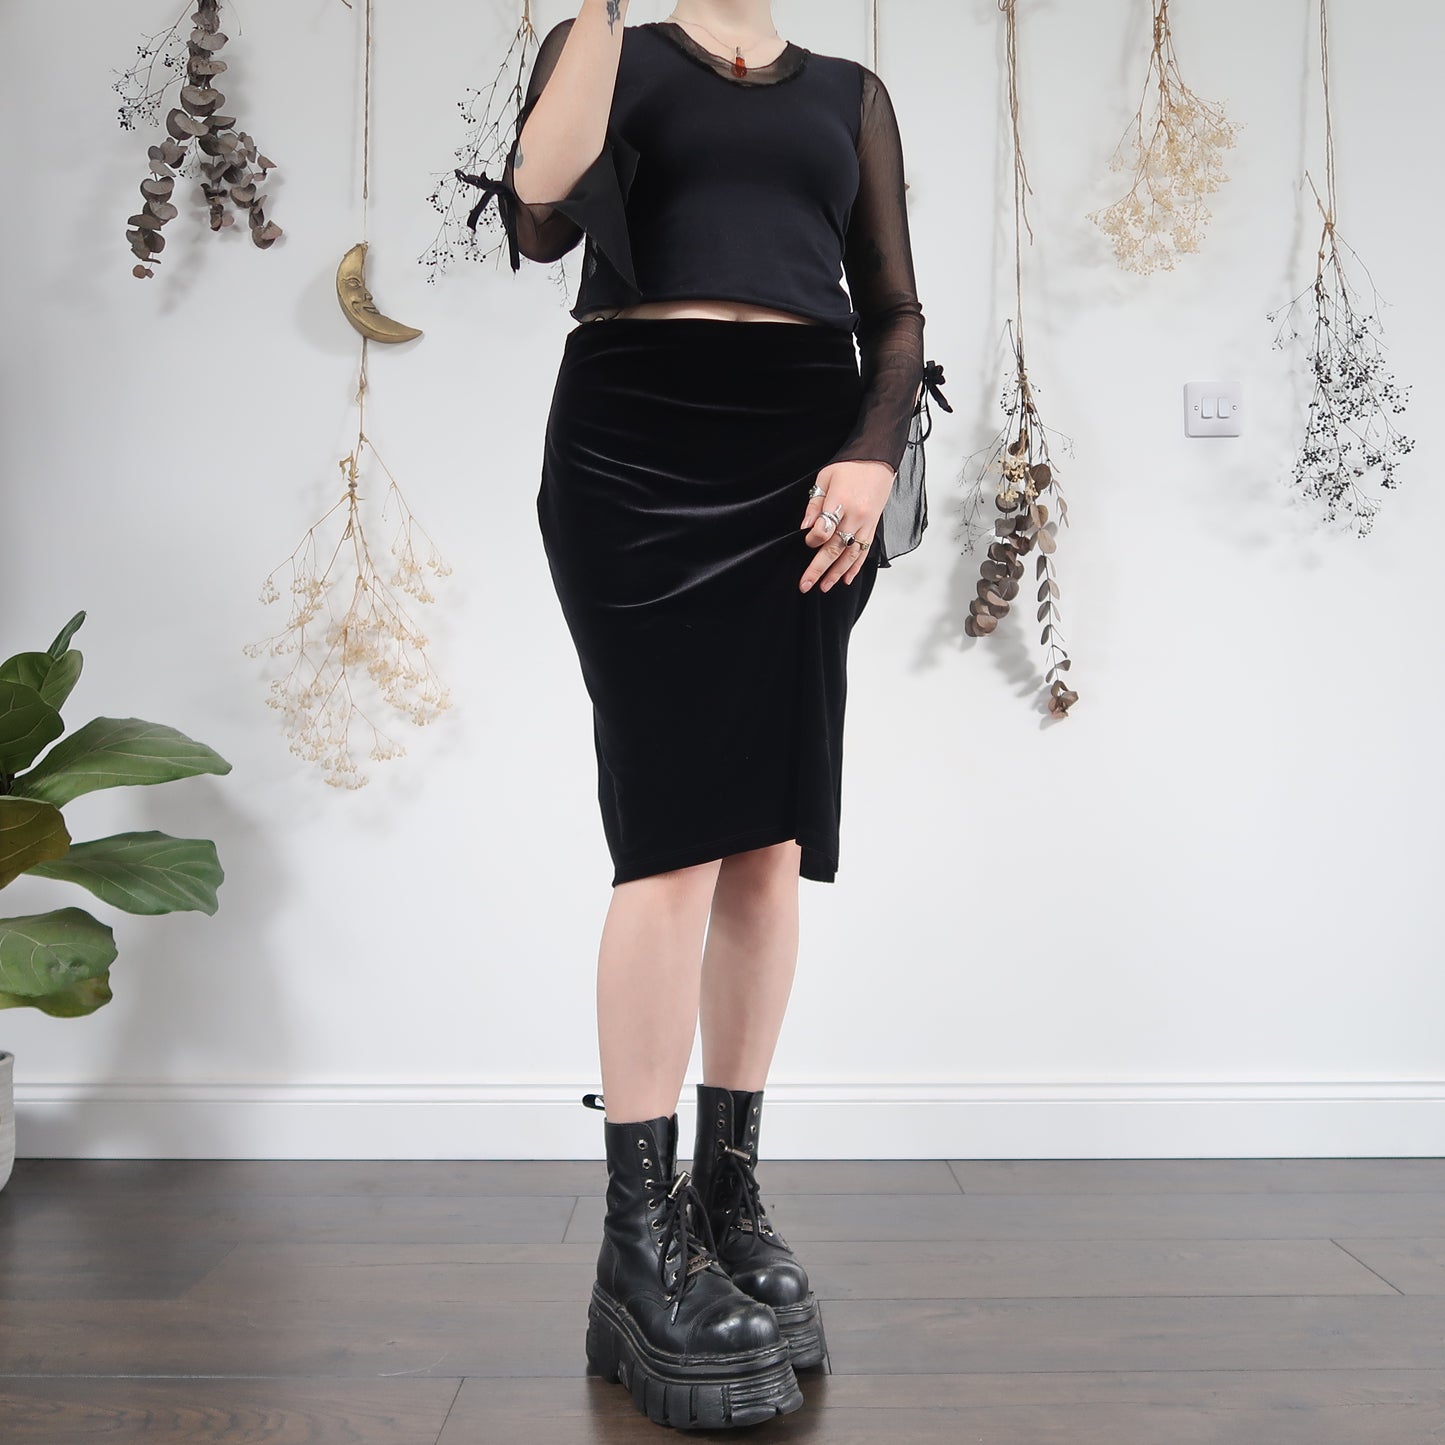 Black velvet skirt - size 10/12